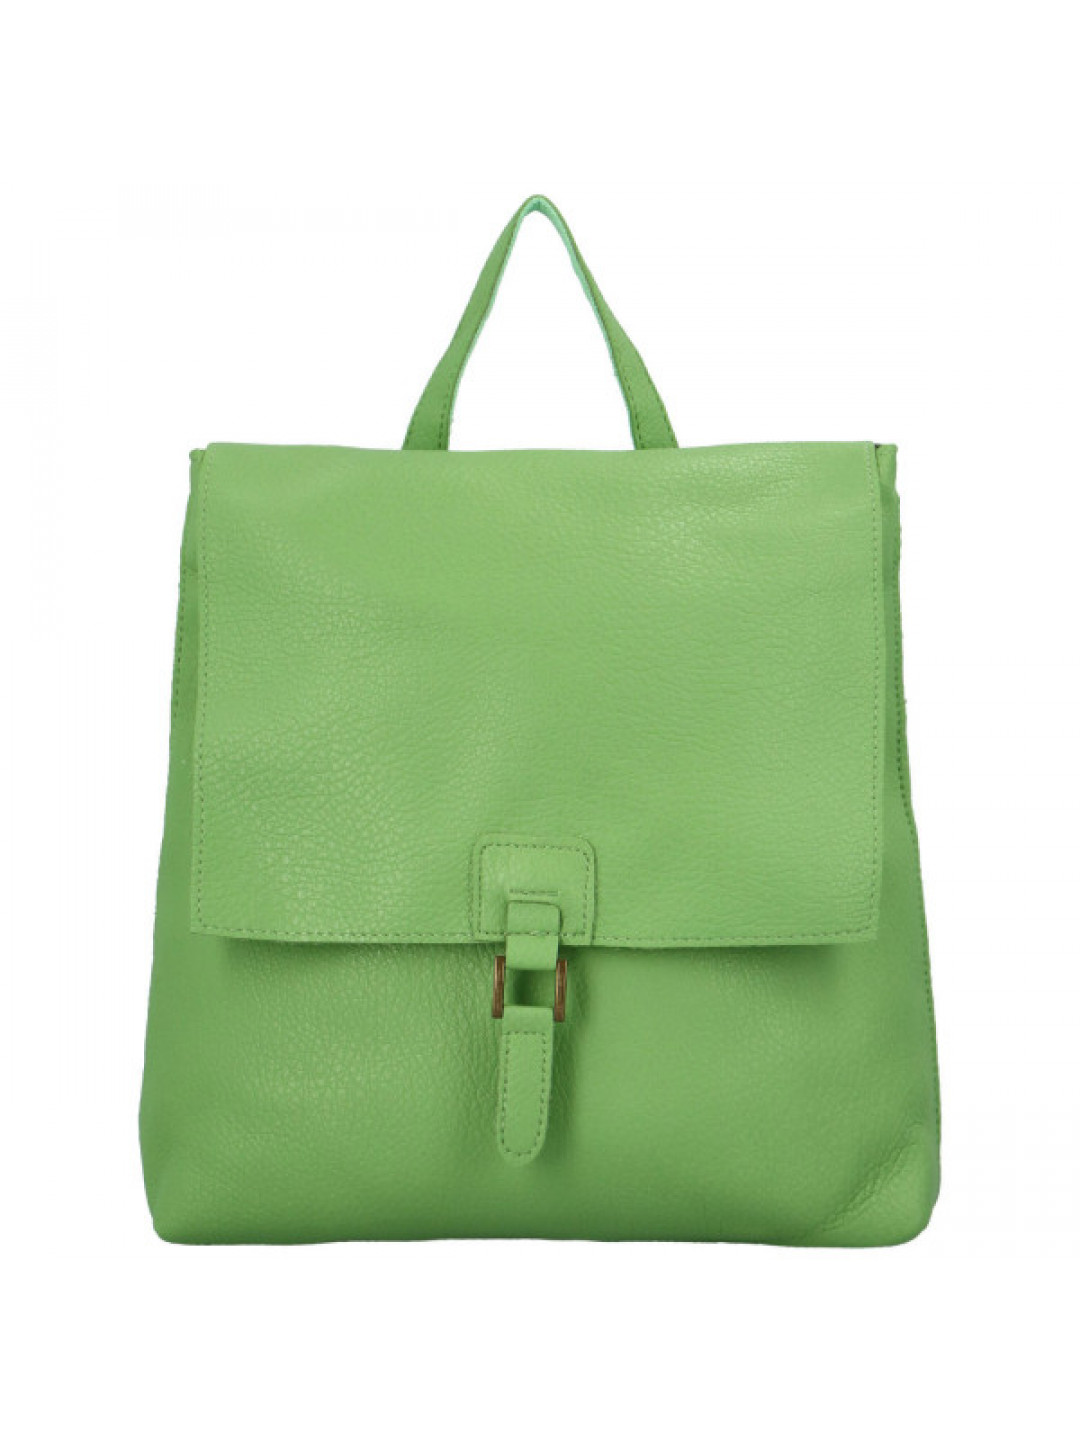 Stylový dámský koženkový kabelko-batoh Octavius zelený